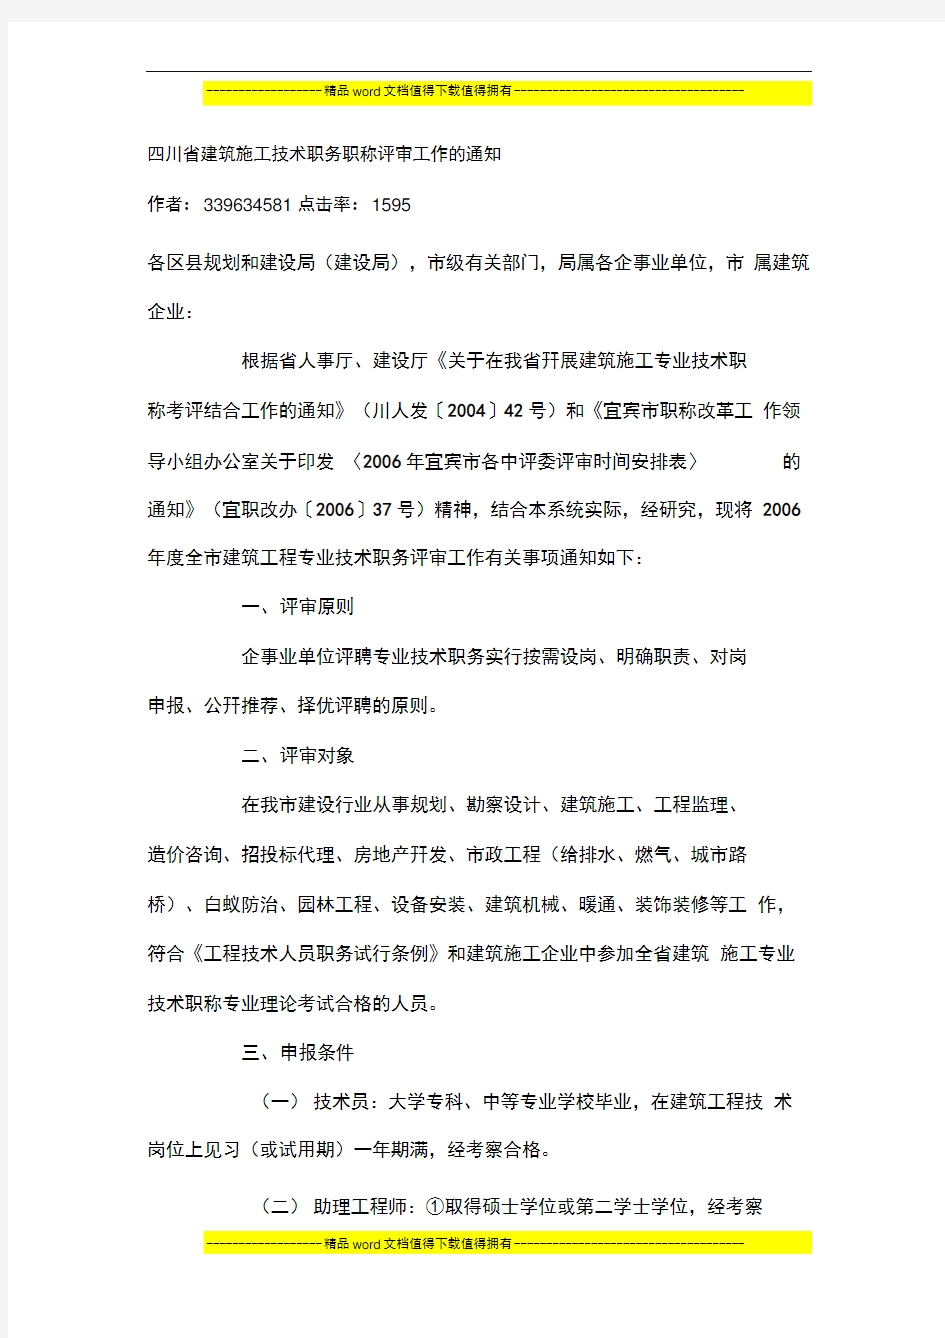 四川省建筑施工技术职务职称评审工作的通知